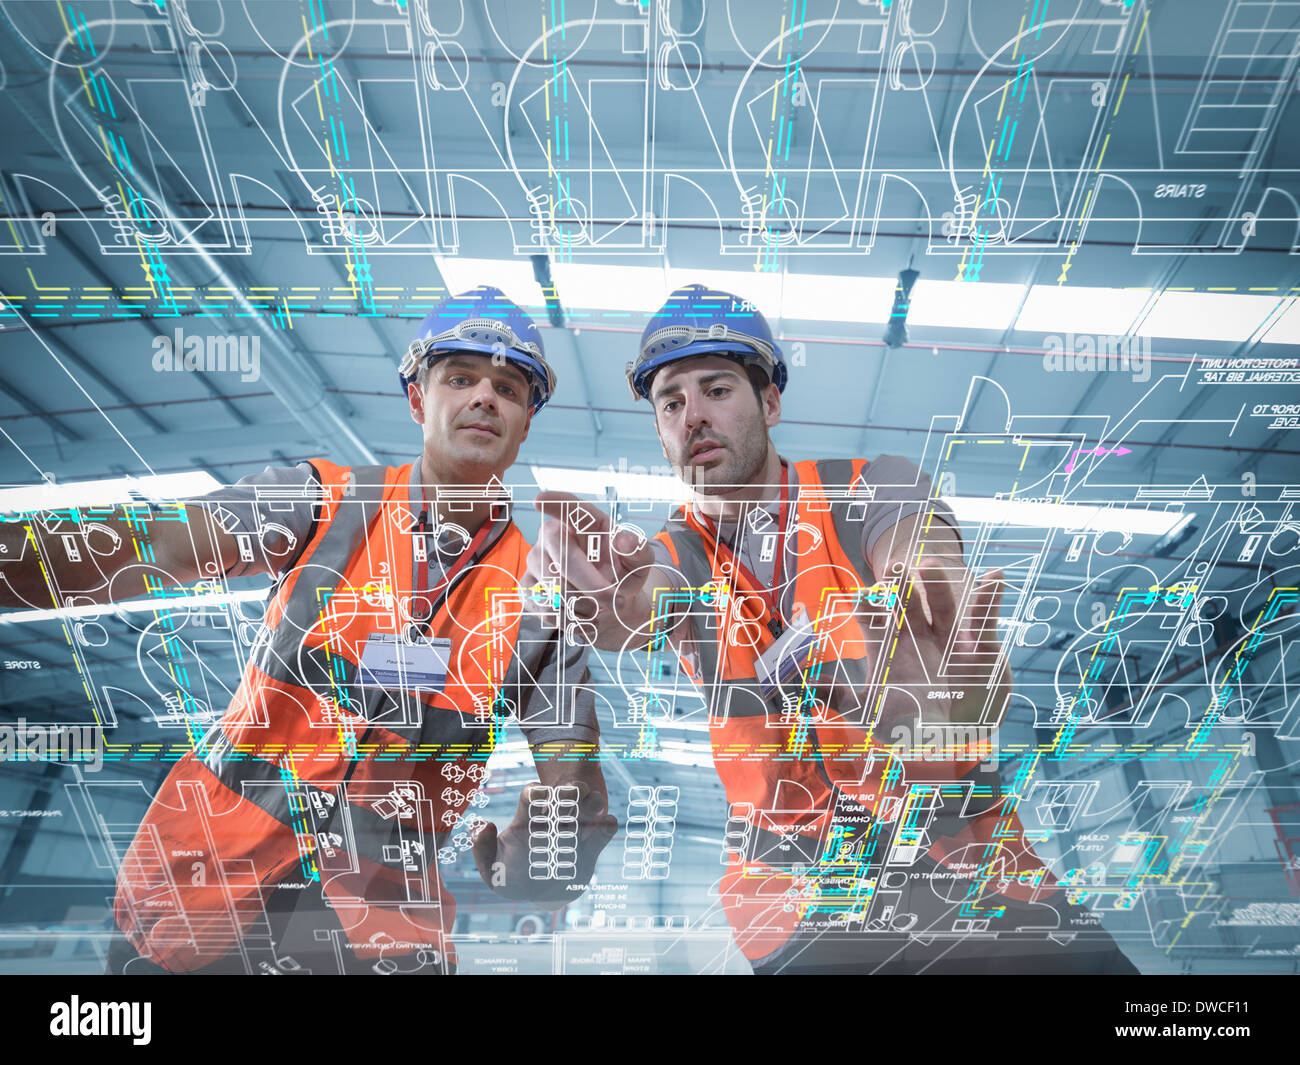 Constructores mirando los planes a través de una pantalla interactiva Foto de stock